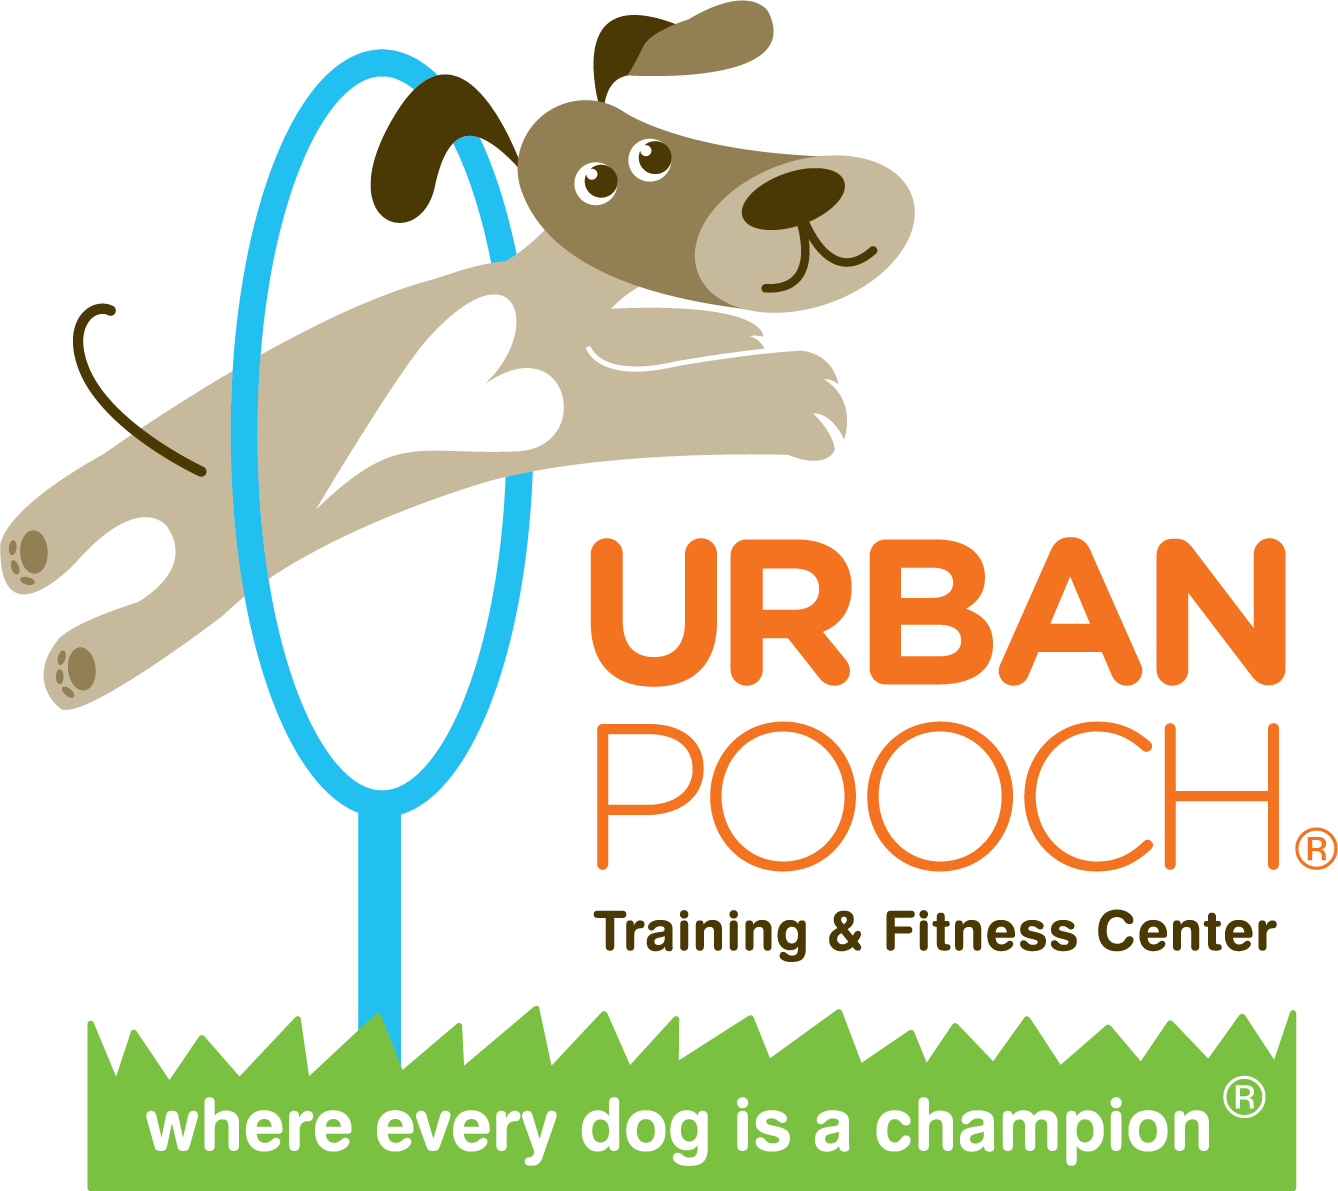 Urban Pooch